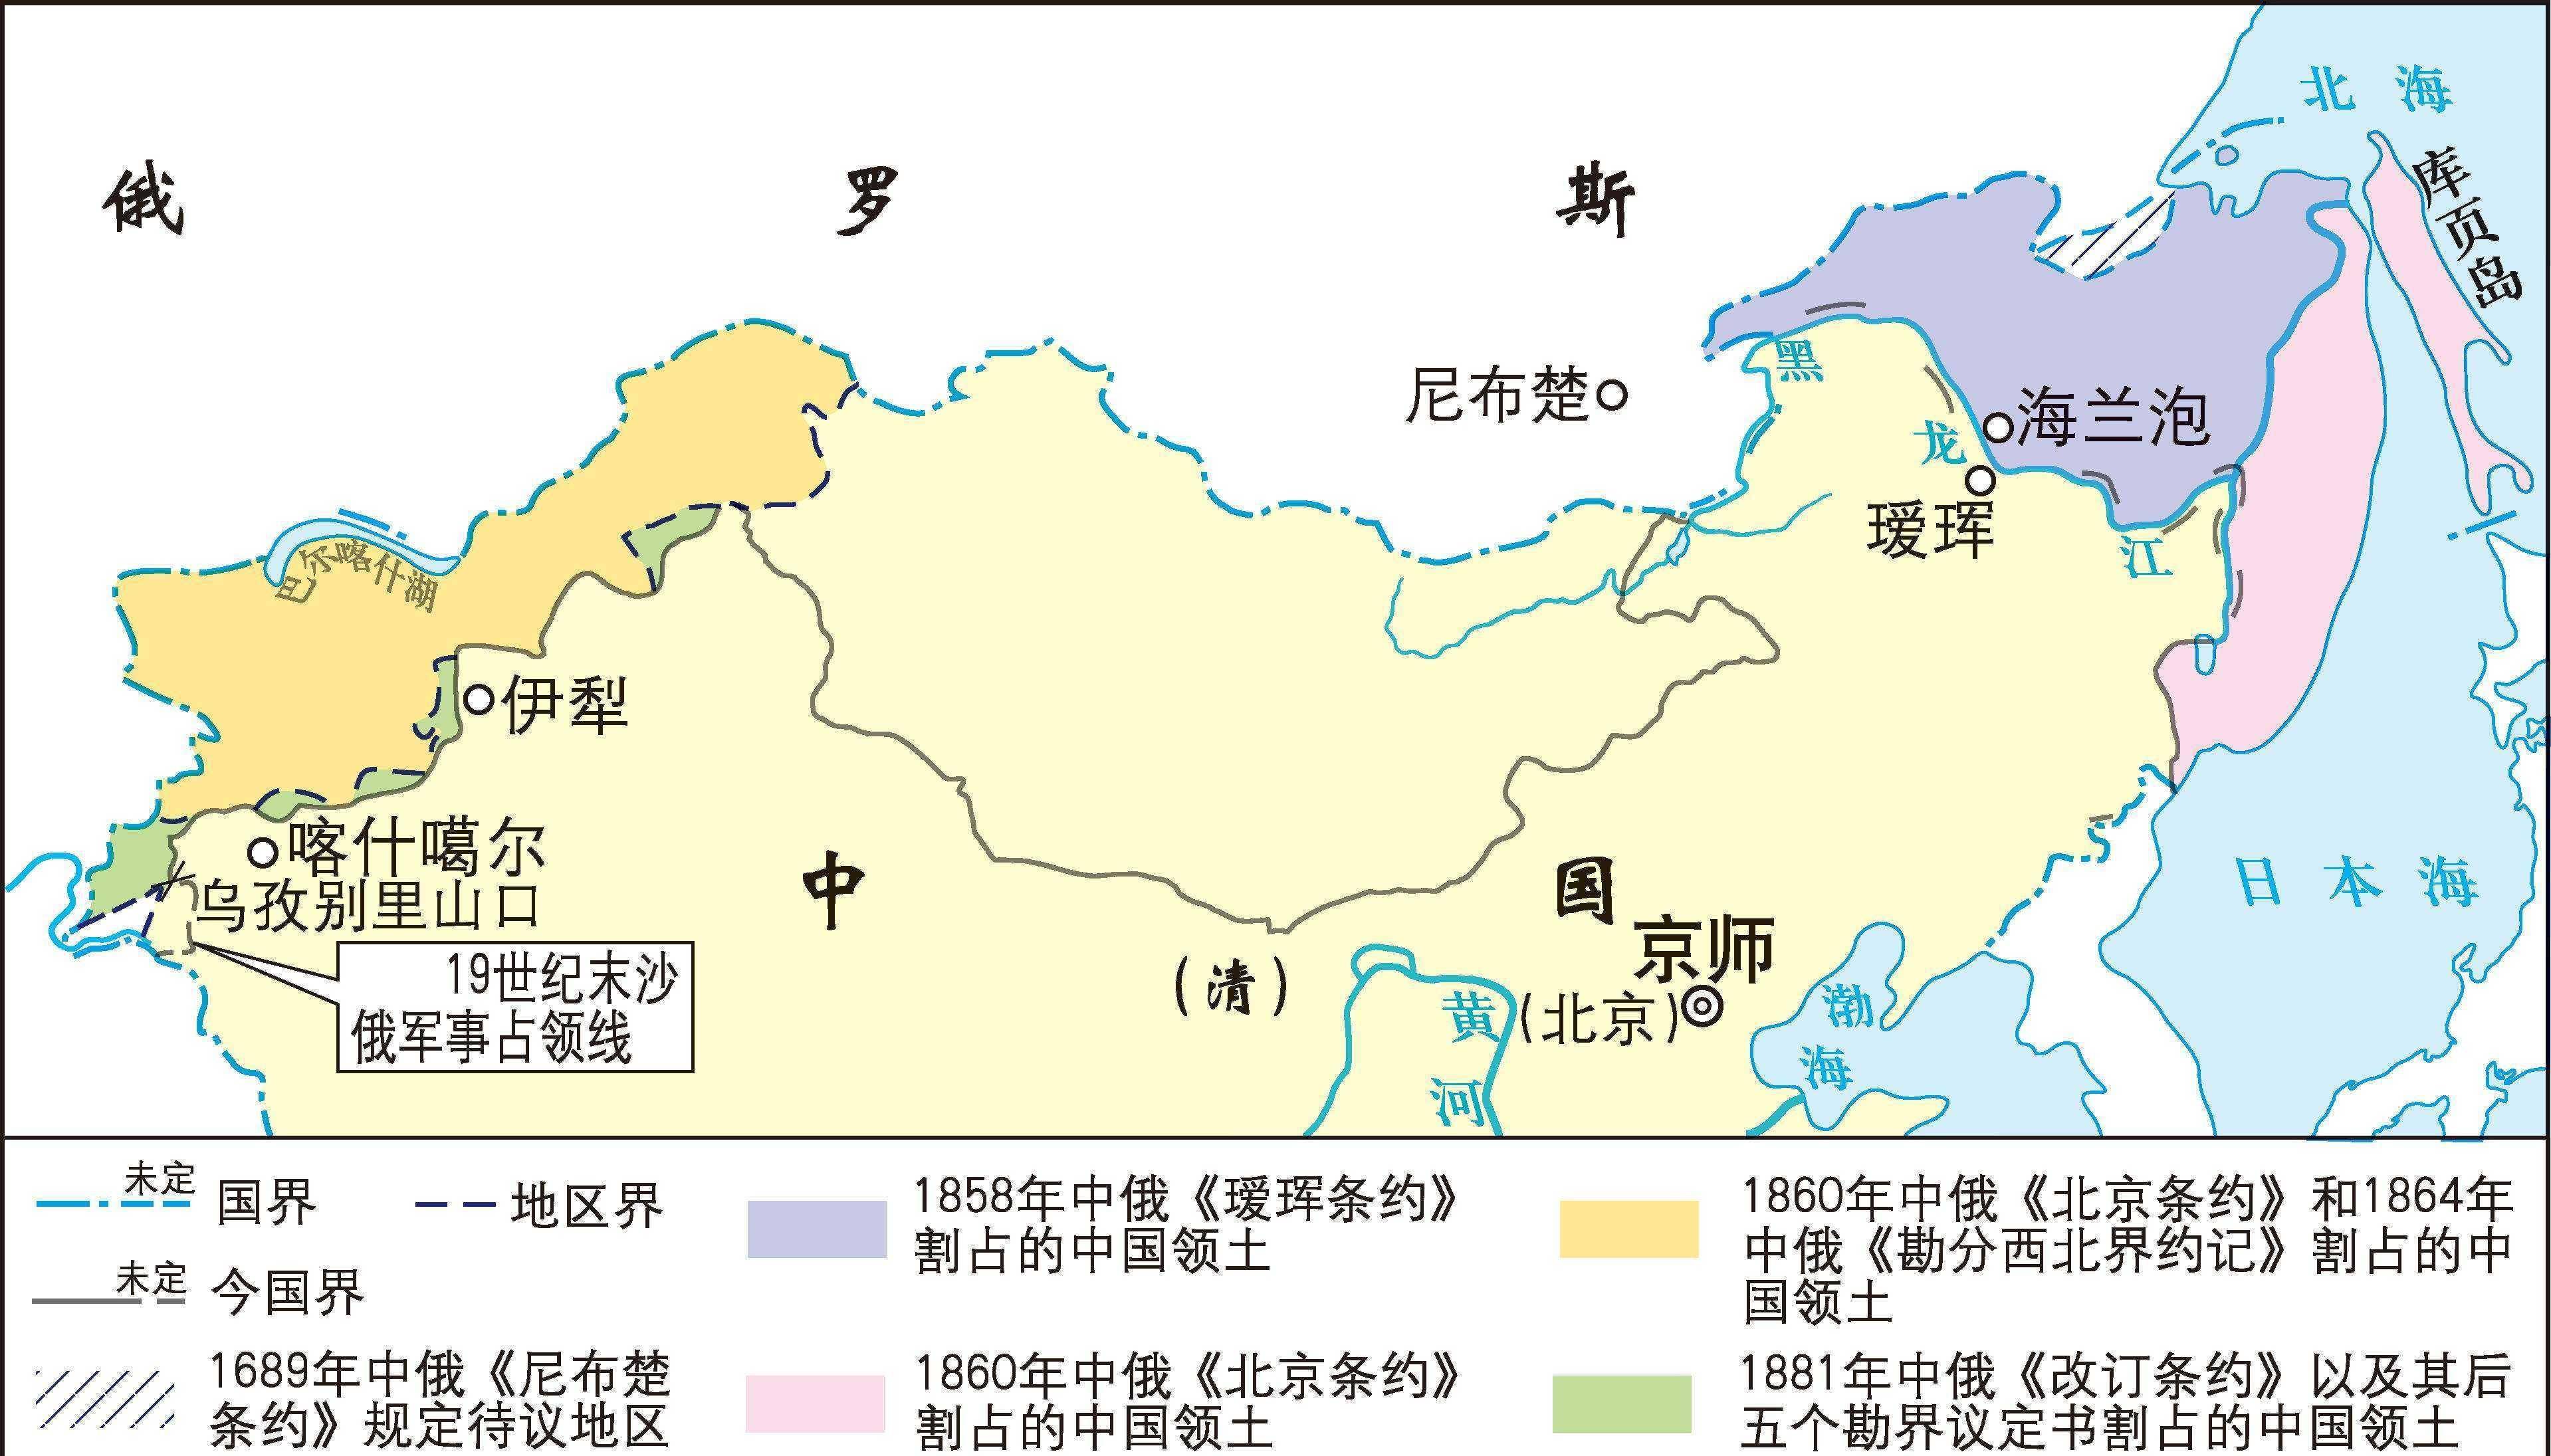 苏联解体后,中国到底收回了多少领土呢?